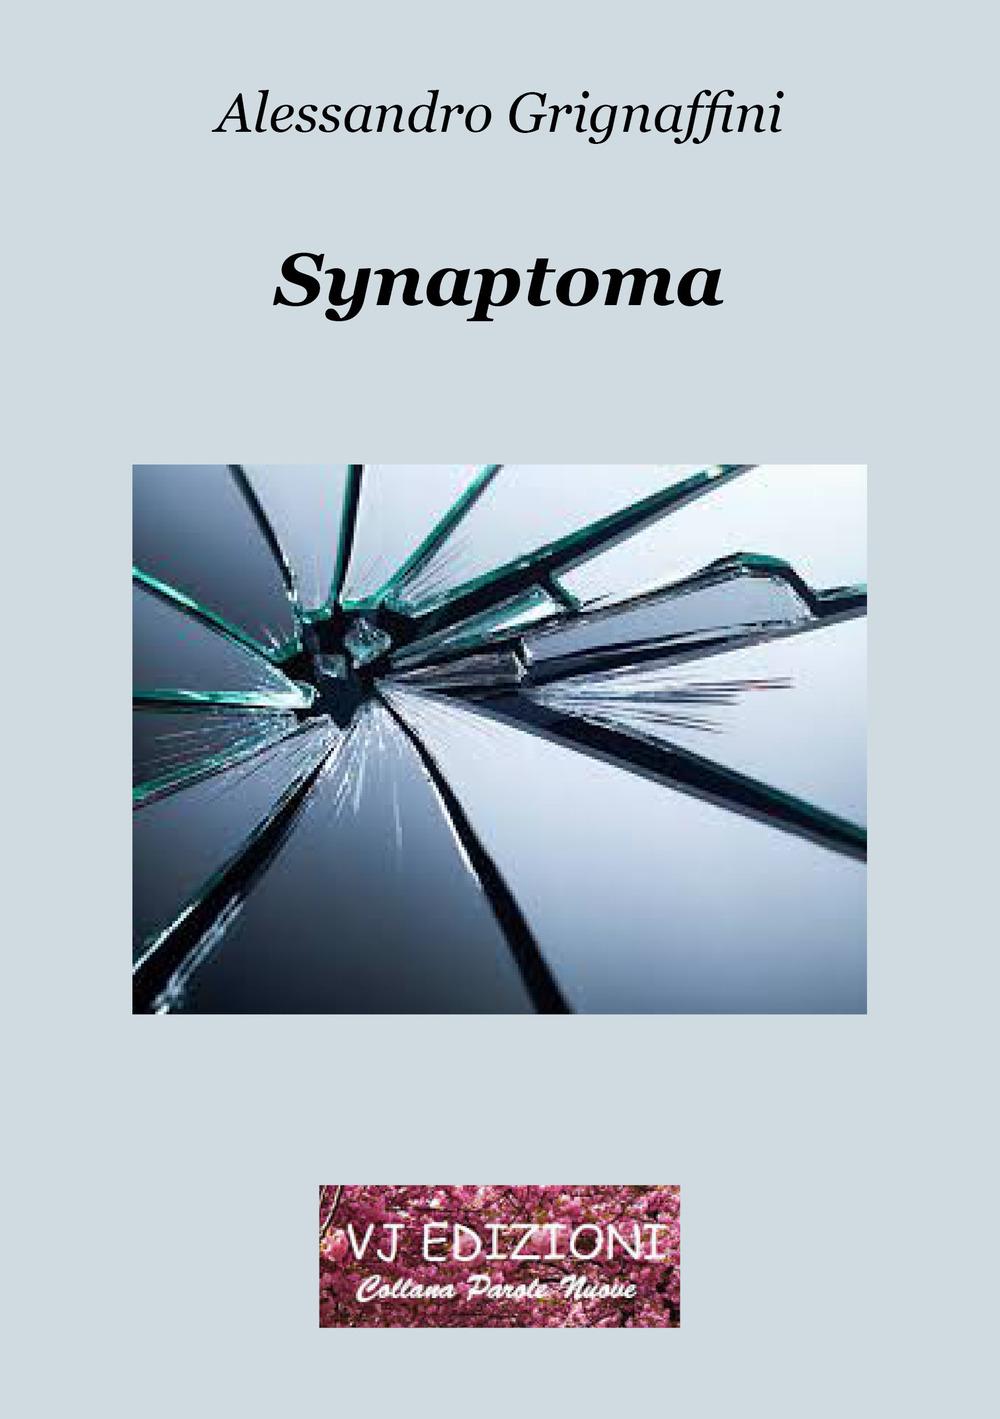 Libri Alessandro Grignaffini - Synaptoma NUOVO SIGILLATO, EDIZIONE DEL 01/10/2019 SUBITO DISPONIBILE